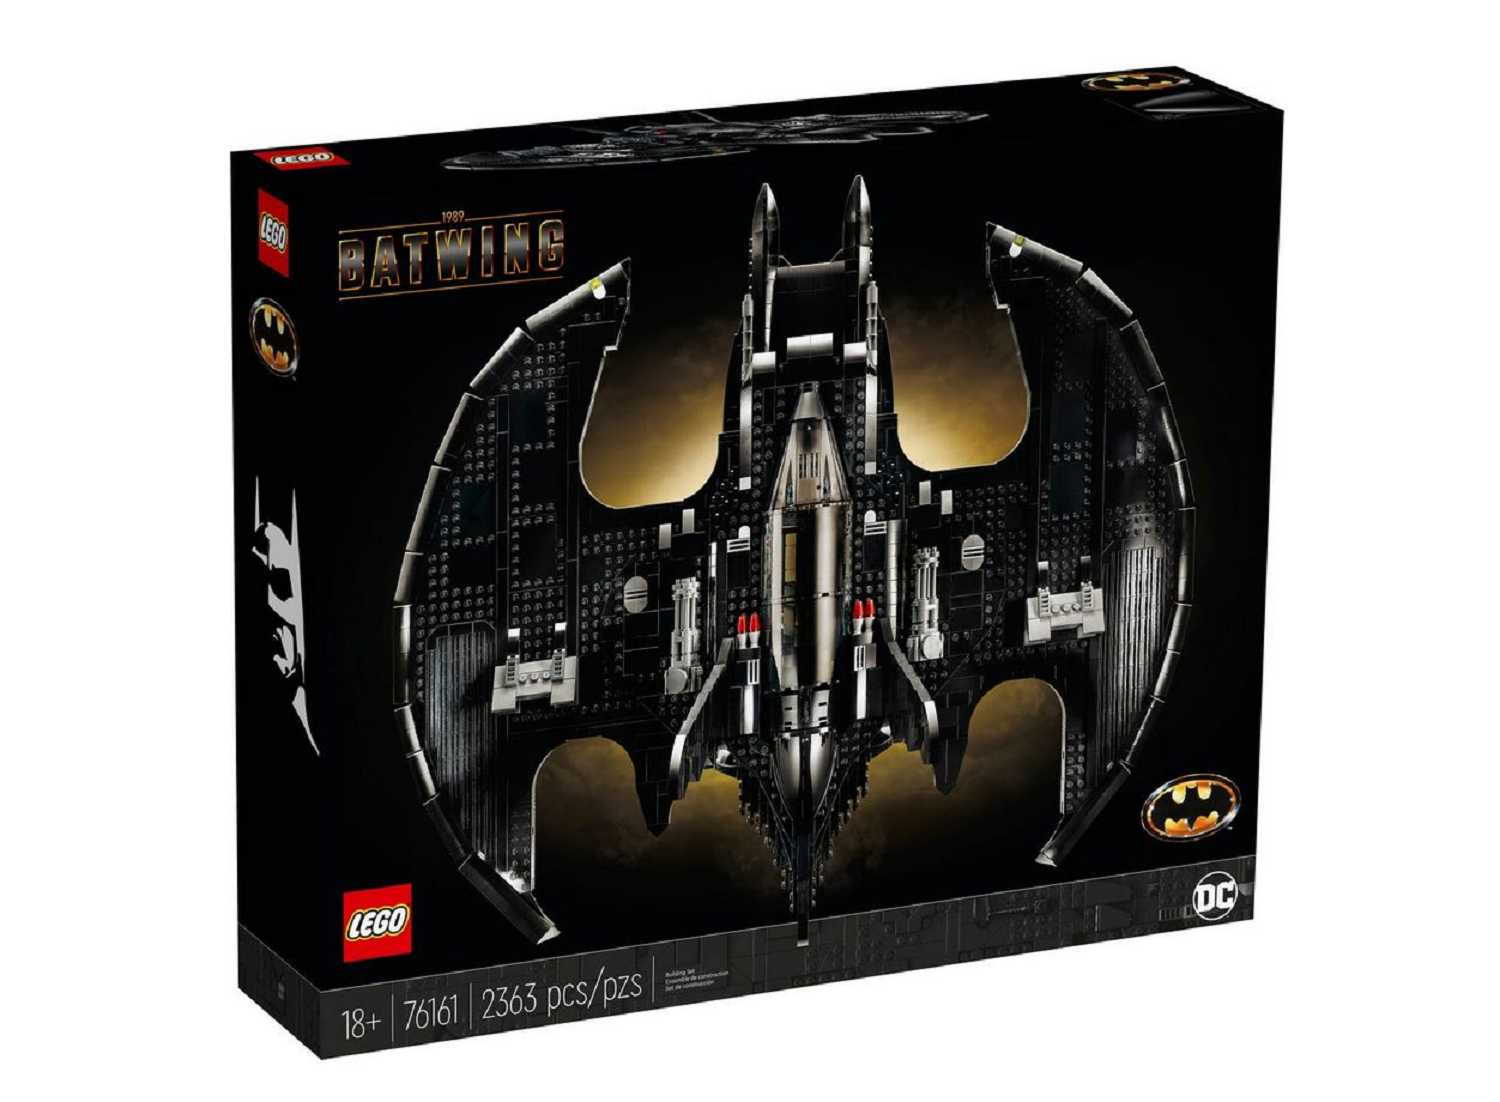 LEGO® Batman 1989 Batwing